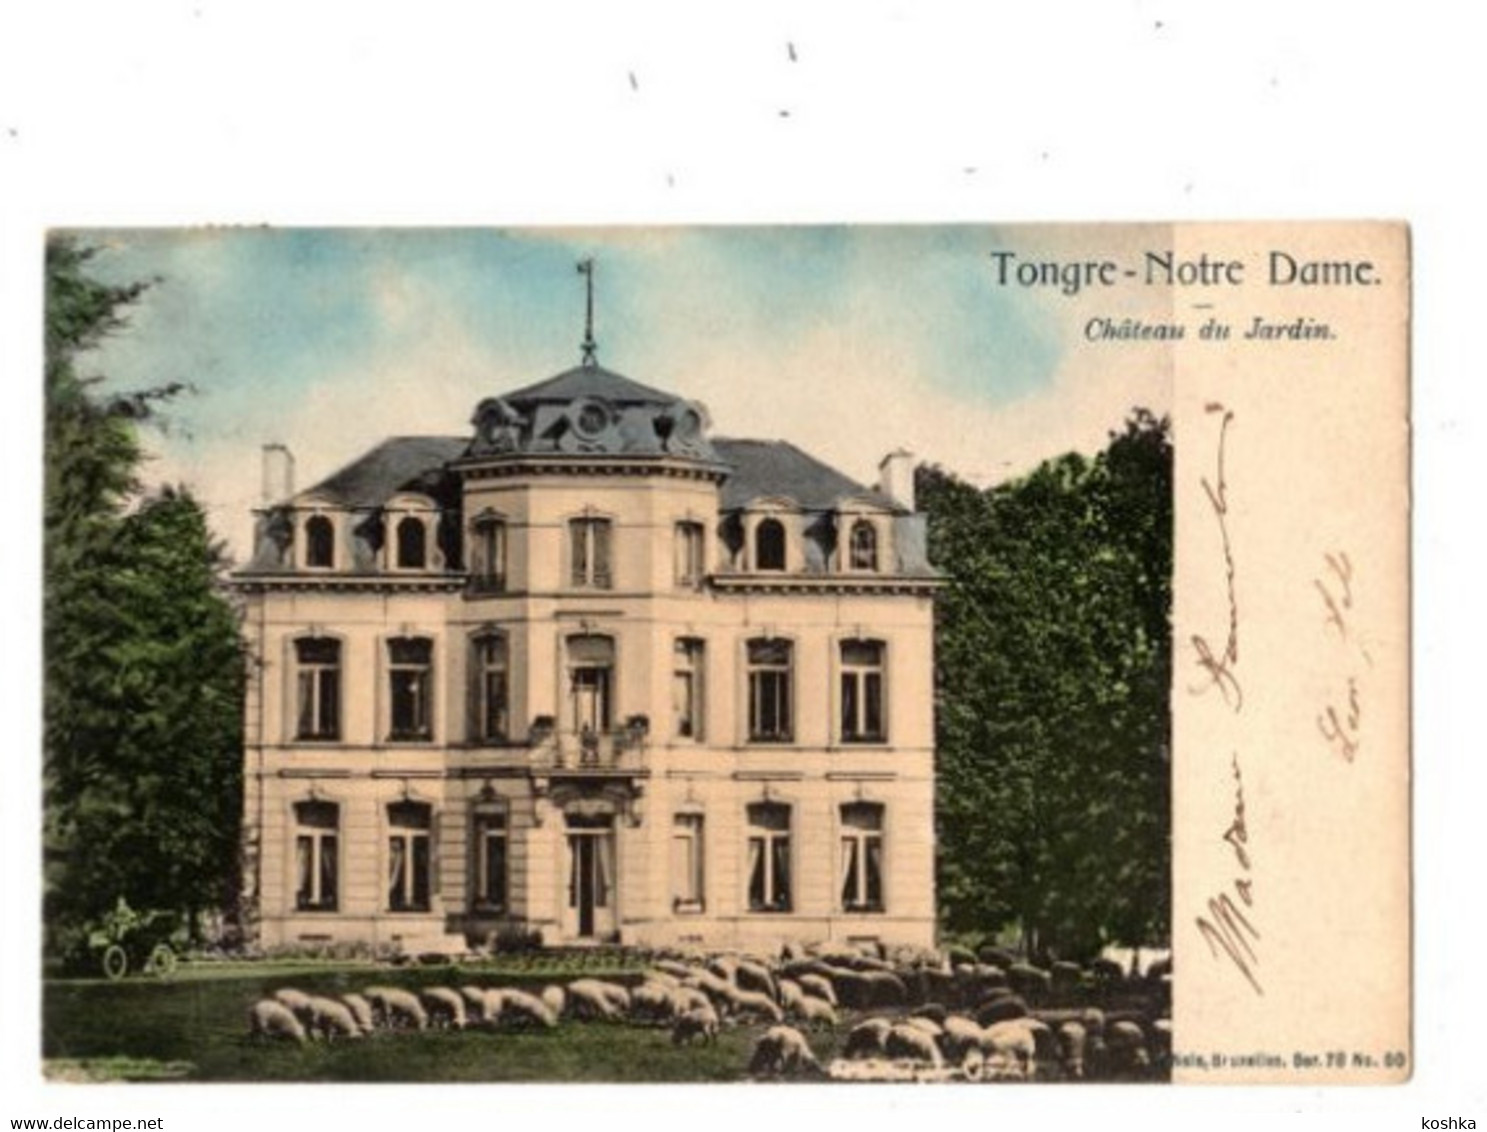 TONGRE NOTRE DAME - Château Du Jardin - Envoyée En 1904 - édit Nels Ser 78 No 50 - K - Chievres